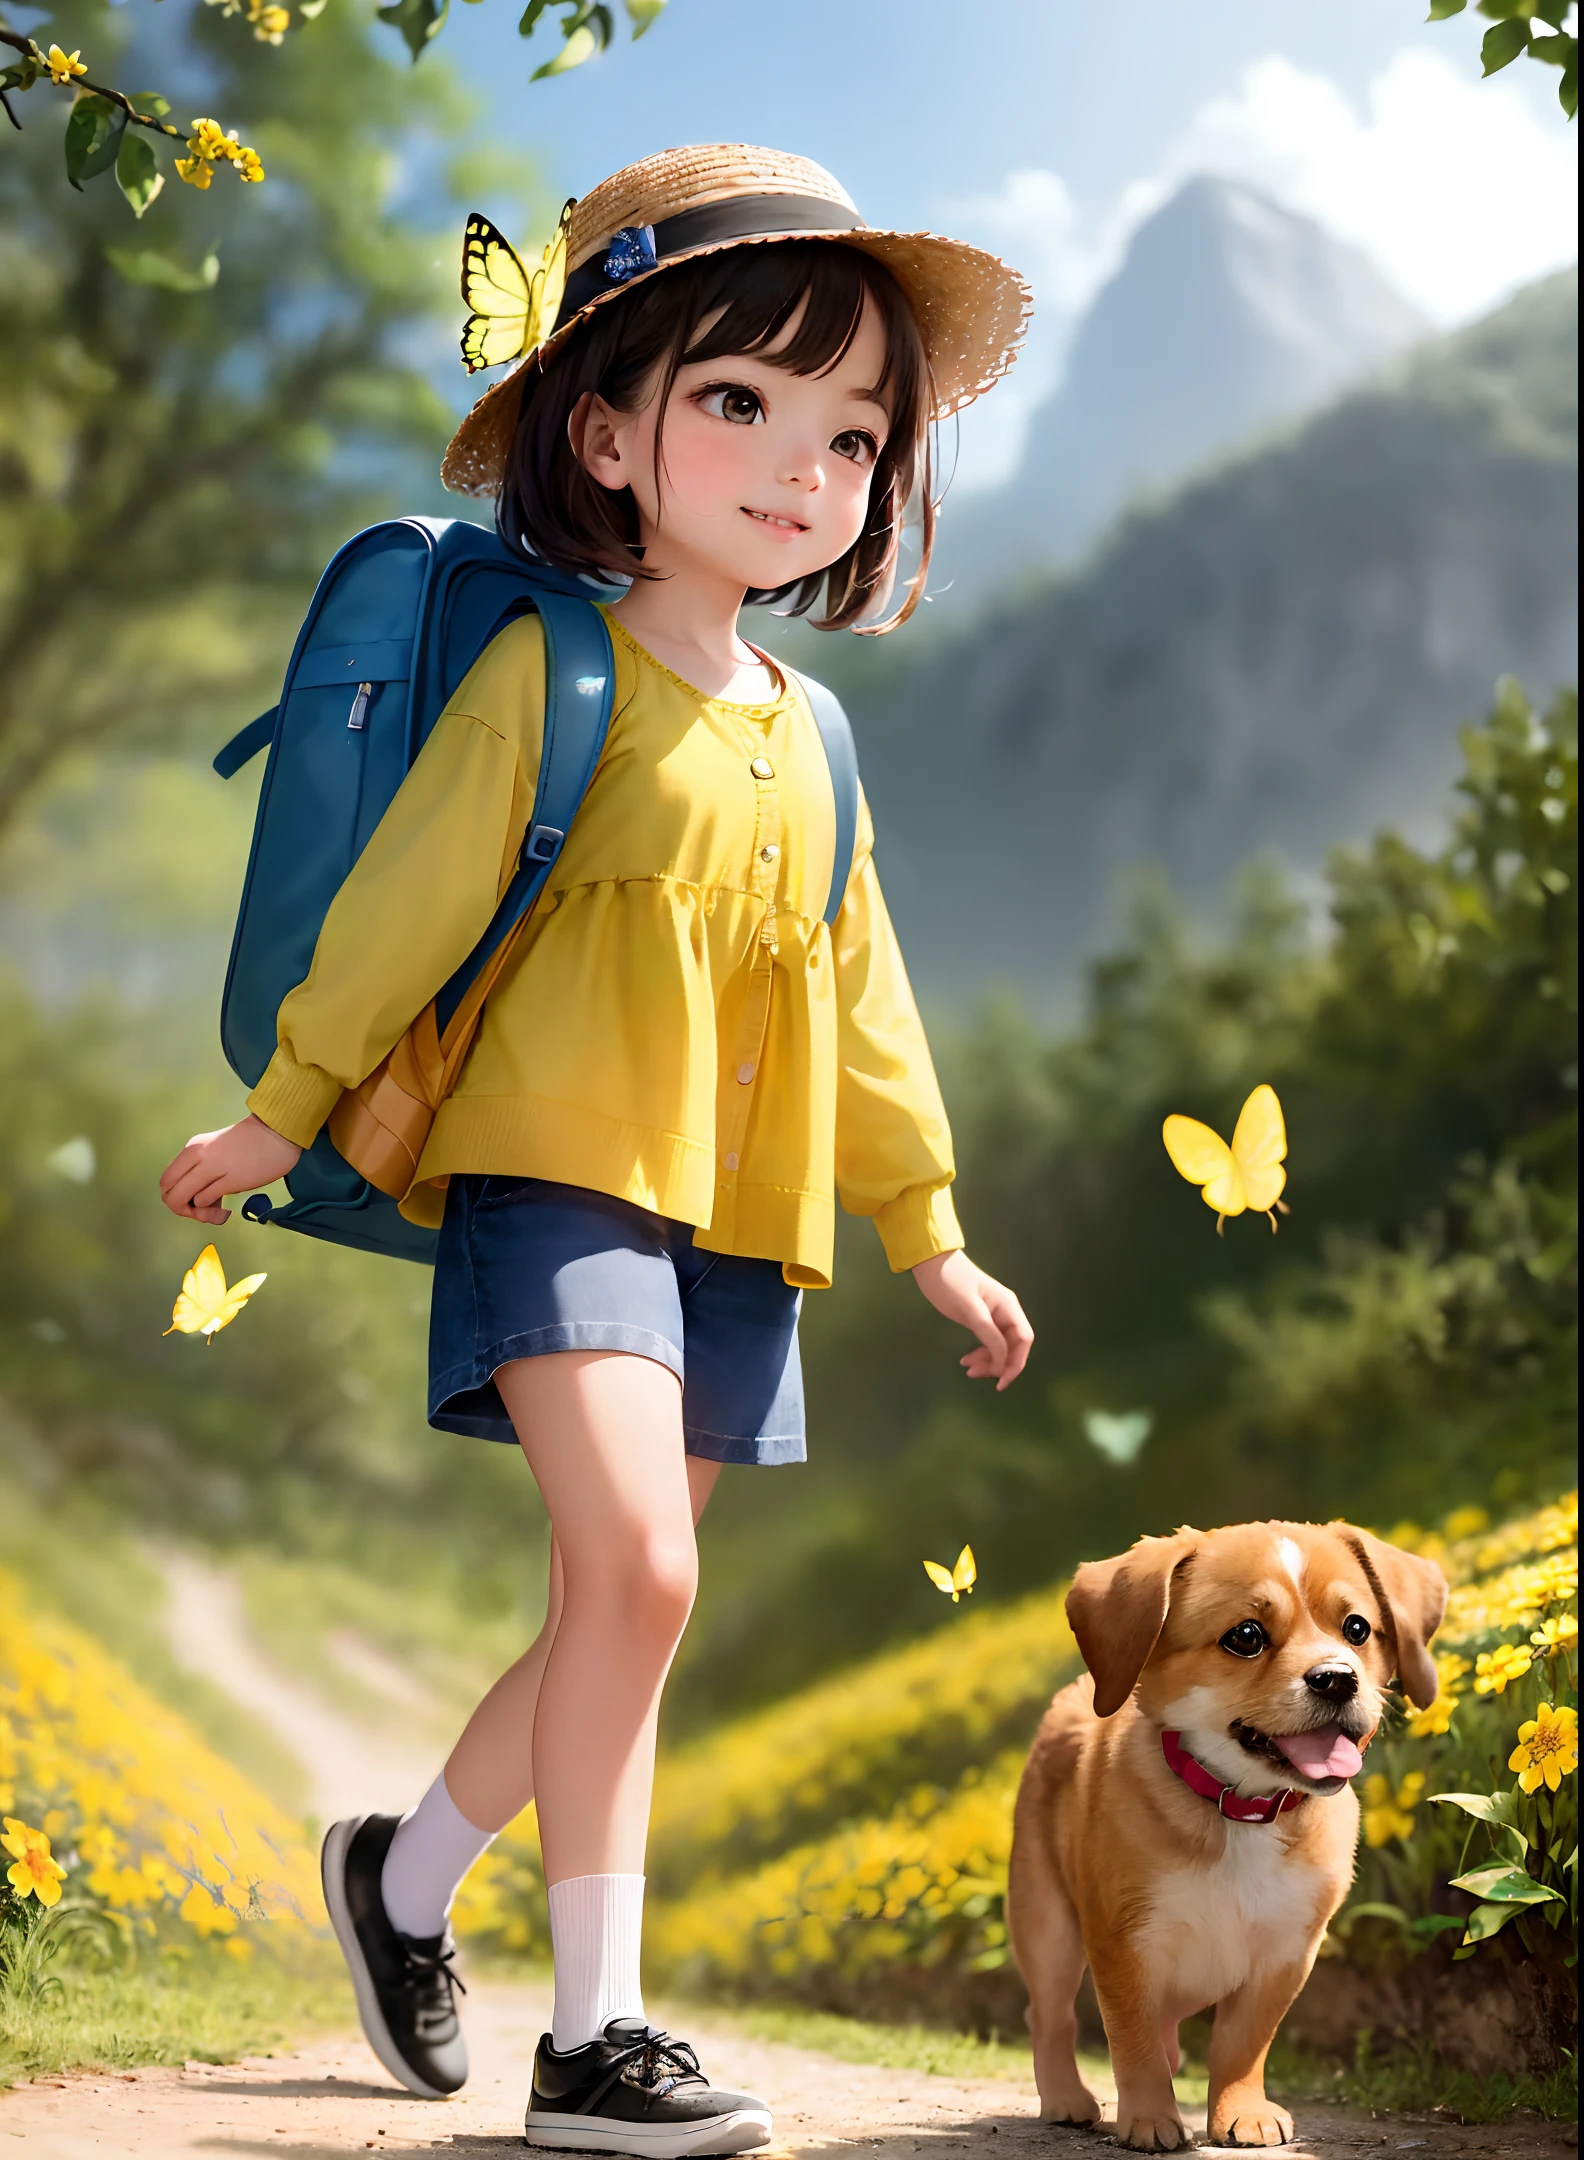 背著背包非常迷人, 伴隨著她可愛的小狗, 享受被美麗的黃色花朵和自然風光包圍的可愛的春遊. 插圖為高清 4k 分辨率, 具有高度細緻的臉部特徵和卡通風格的視覺效果, (蝴蝶舞)